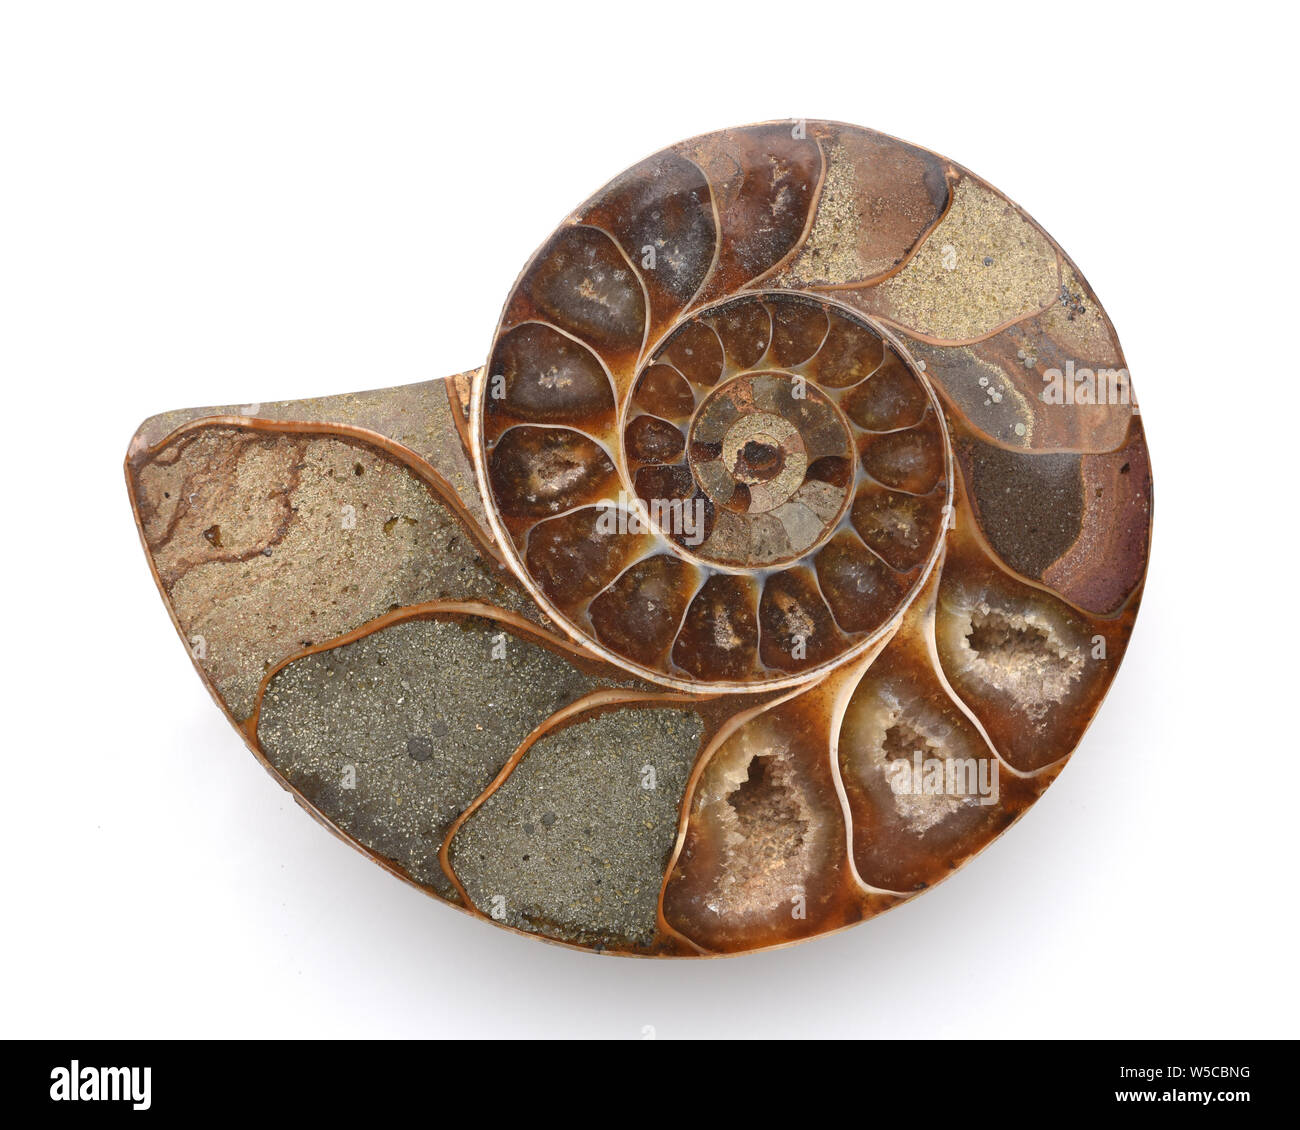 Ammonit, Fossil, Sagittalschnitt Stock Photo